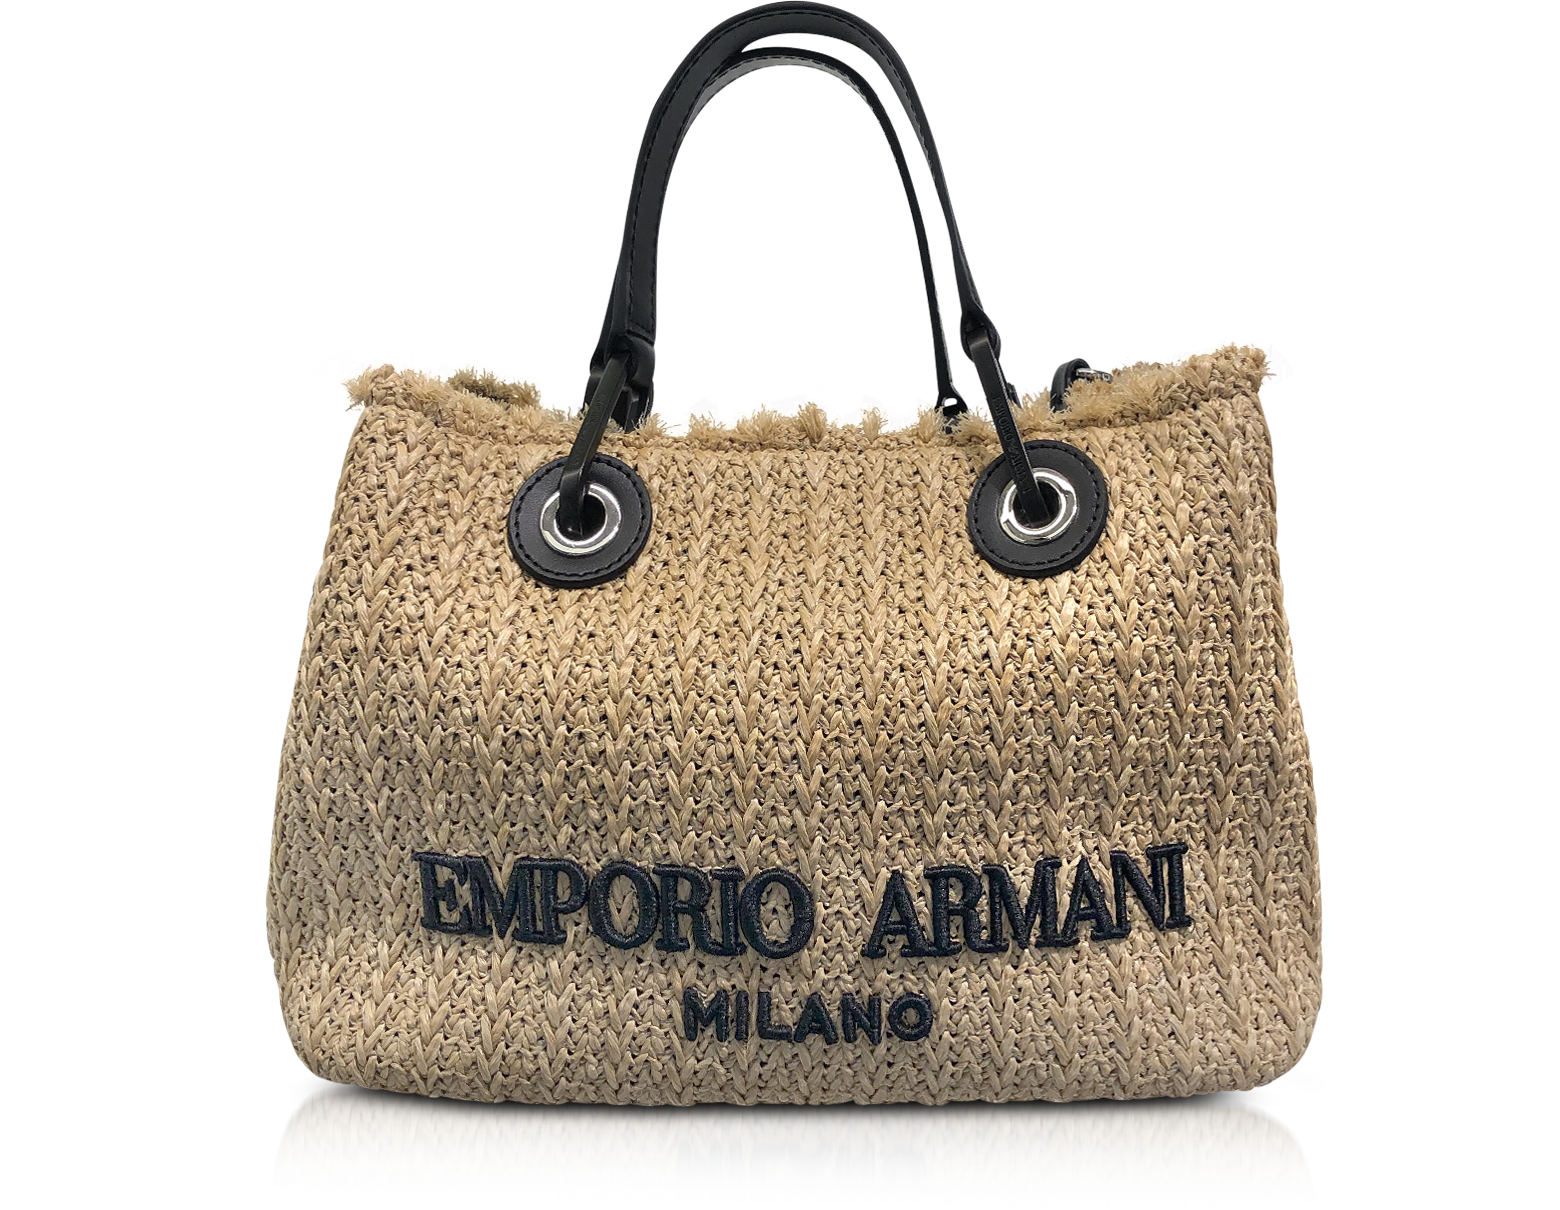 Emporio Armani Tote Bag Offer, Save 56% 